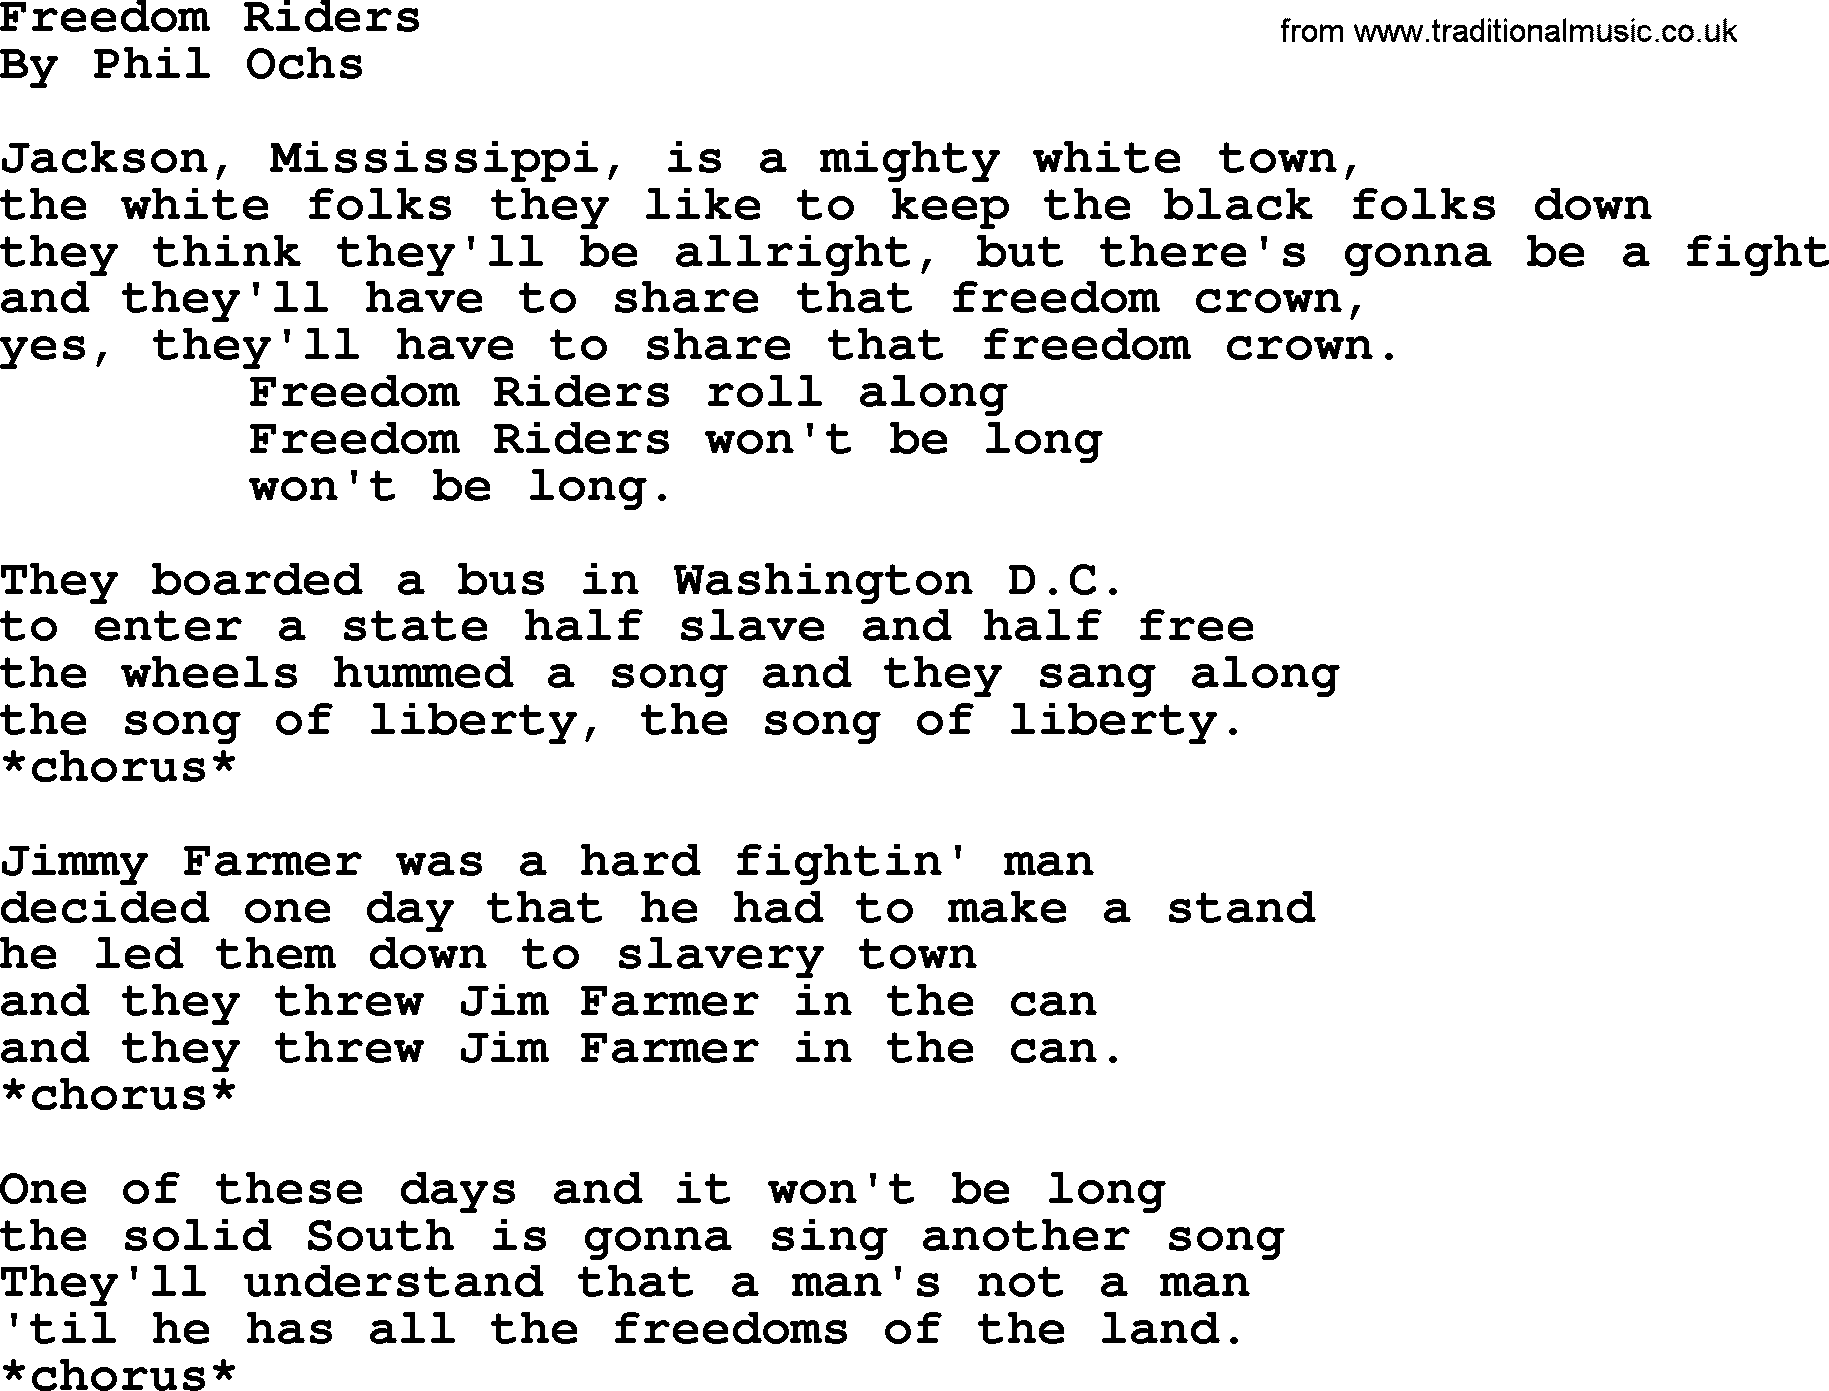 Phil Ochs song Freedom Riders, lyrics